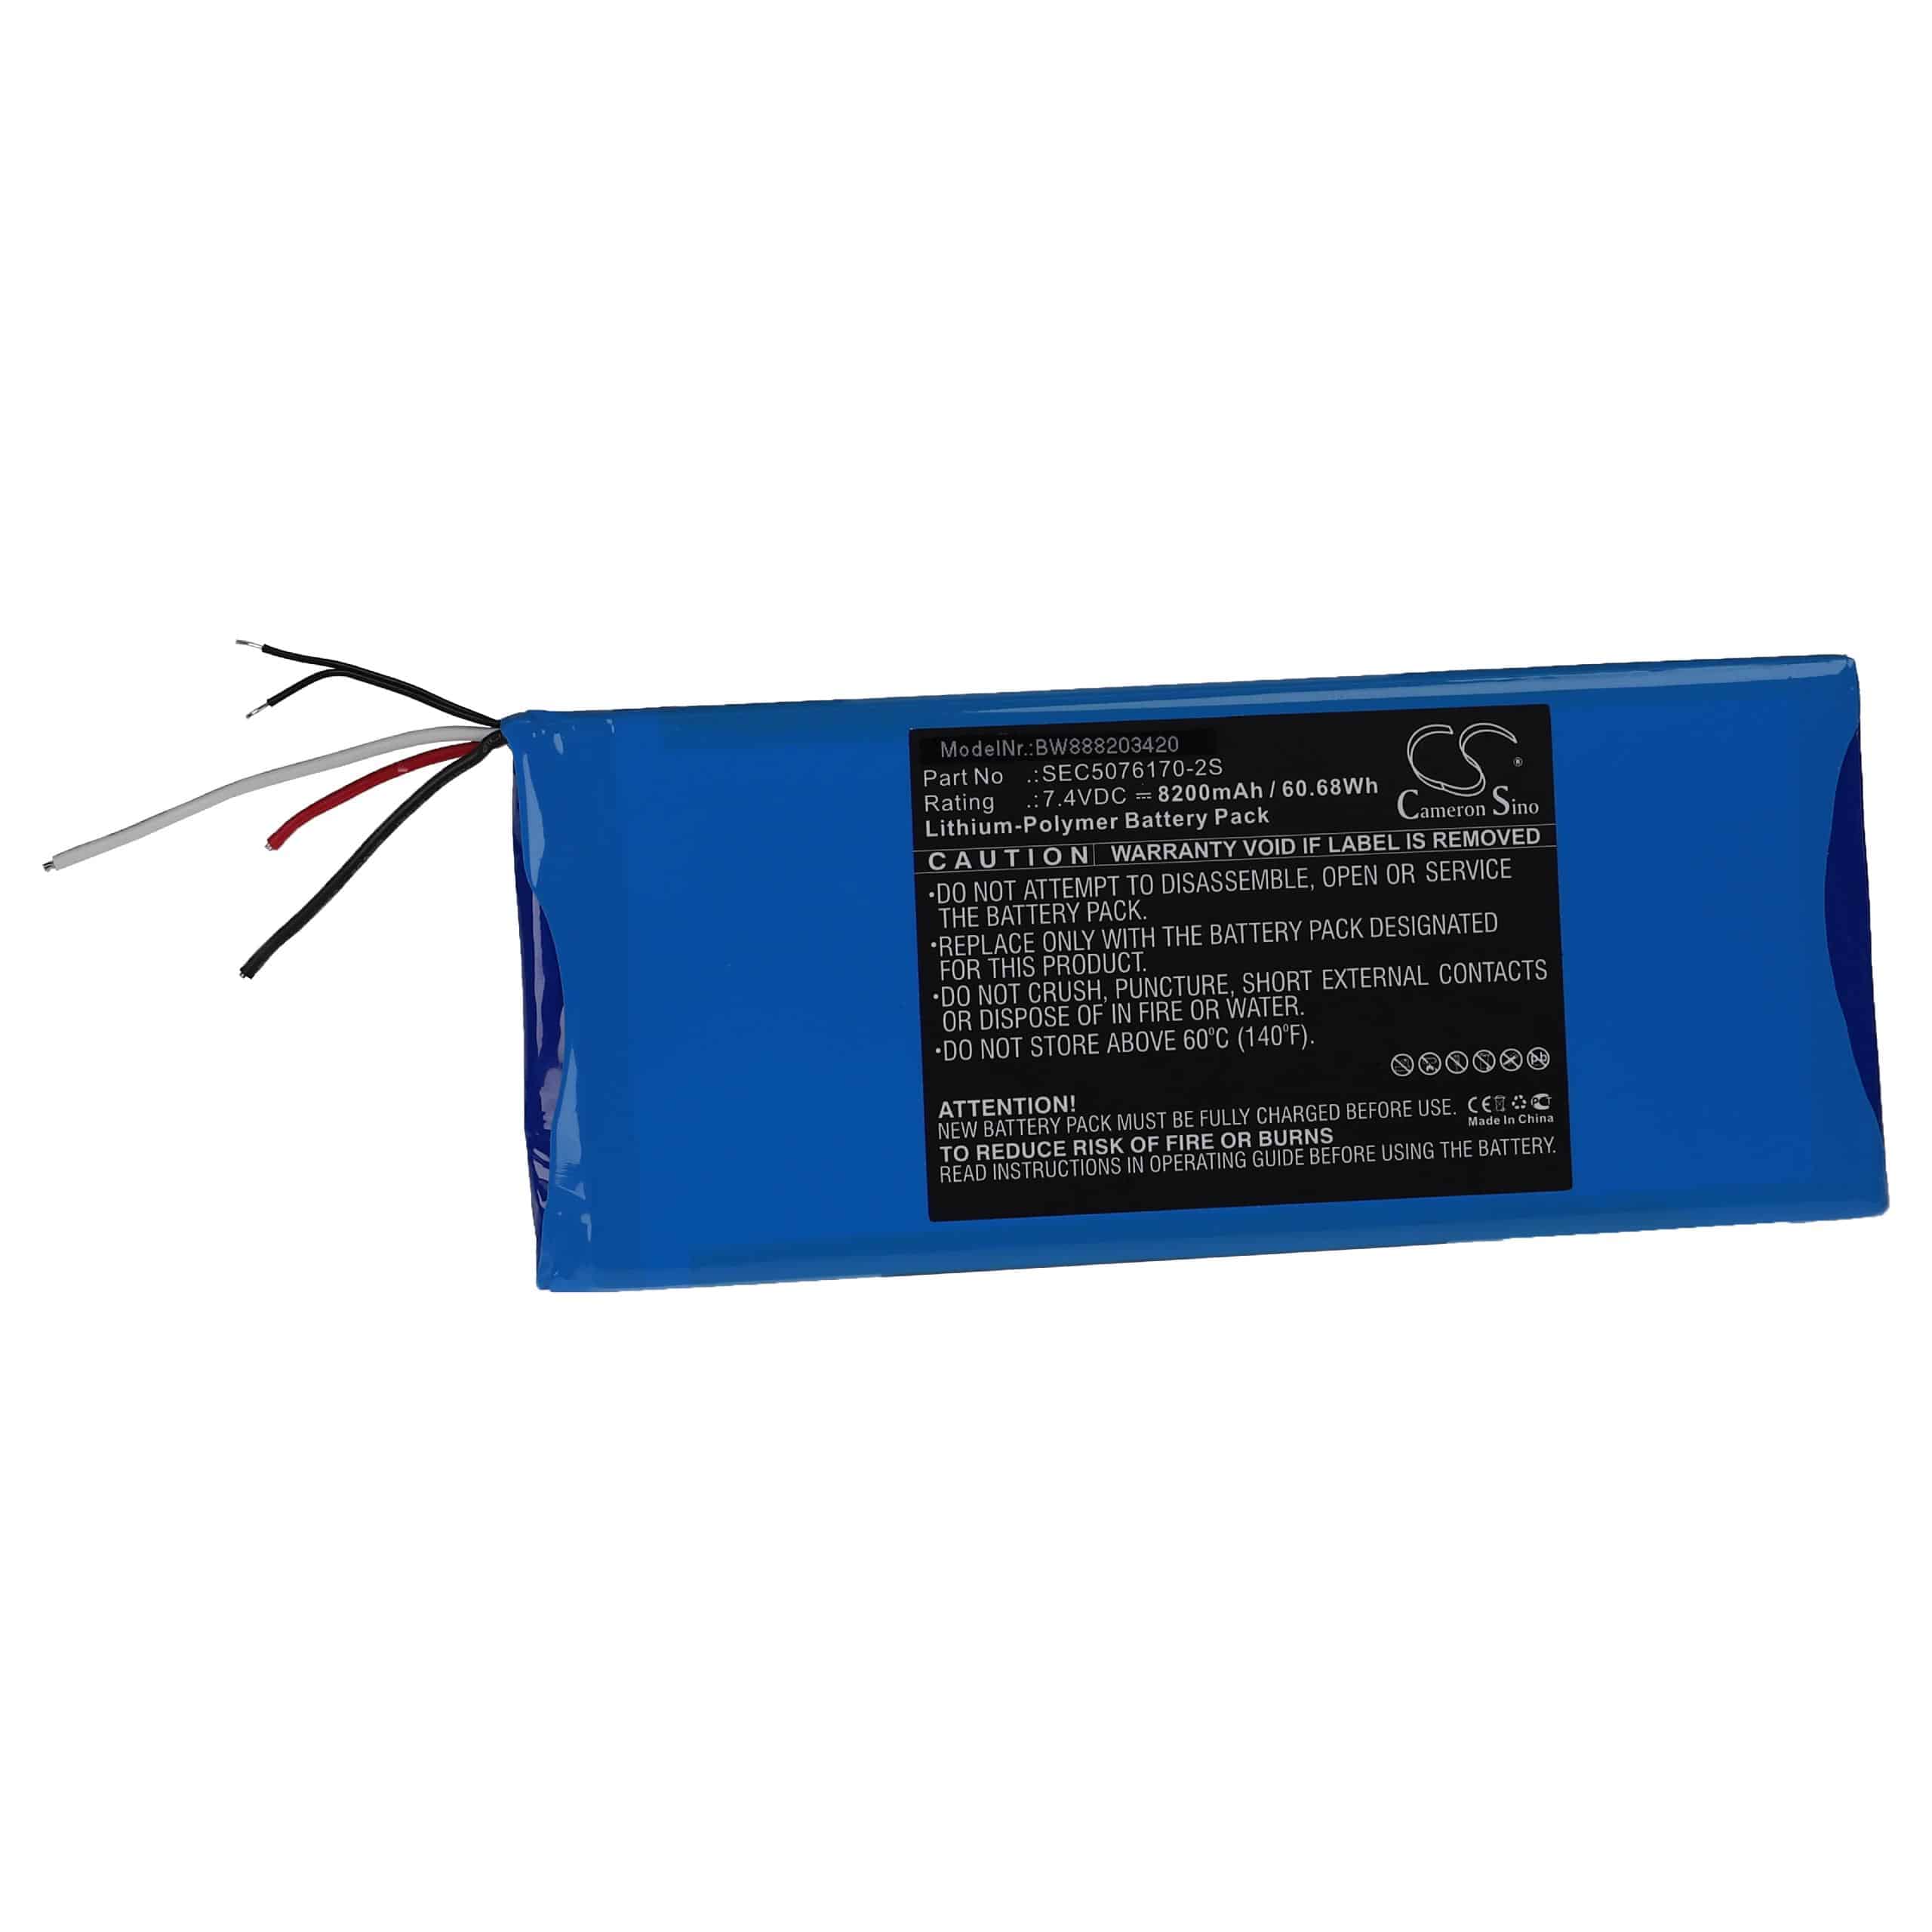 Akumulator do przyrządu pomiarowego zamiennik Micsig SEC5076170-2S - 8200 mAh 7,4 V LiPo